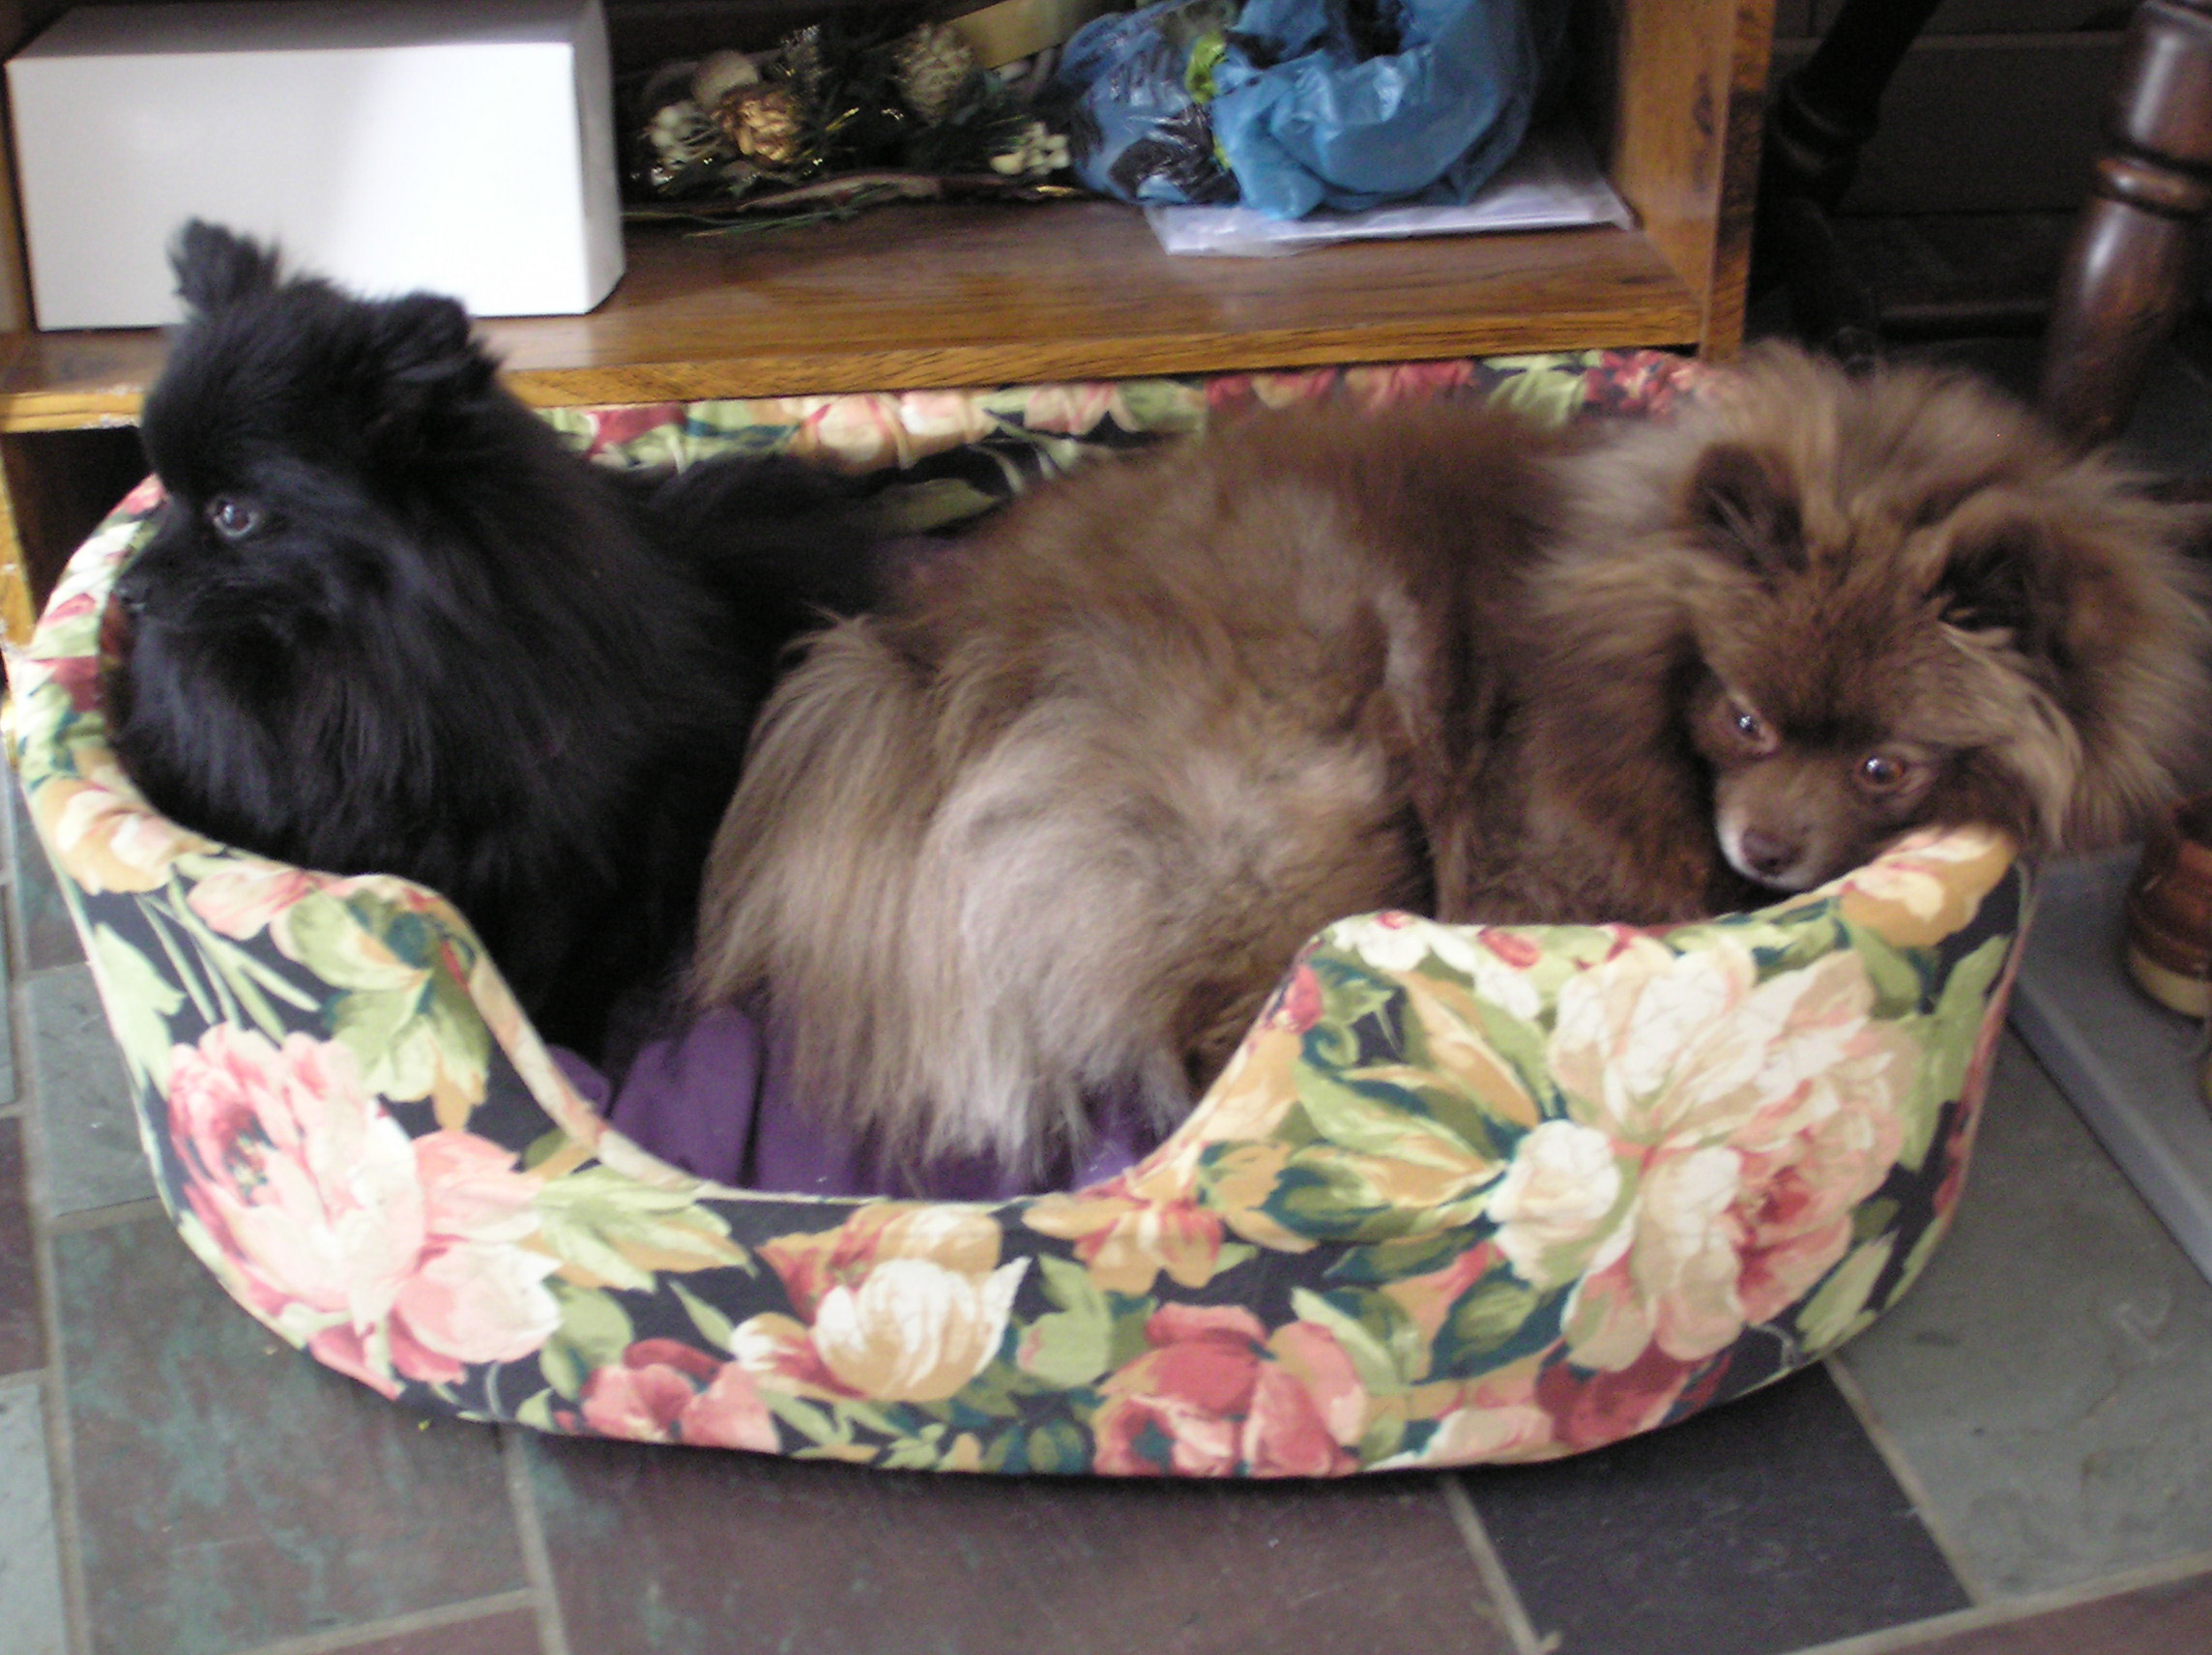 Meko and Binka Snuggled Together in Their Bed